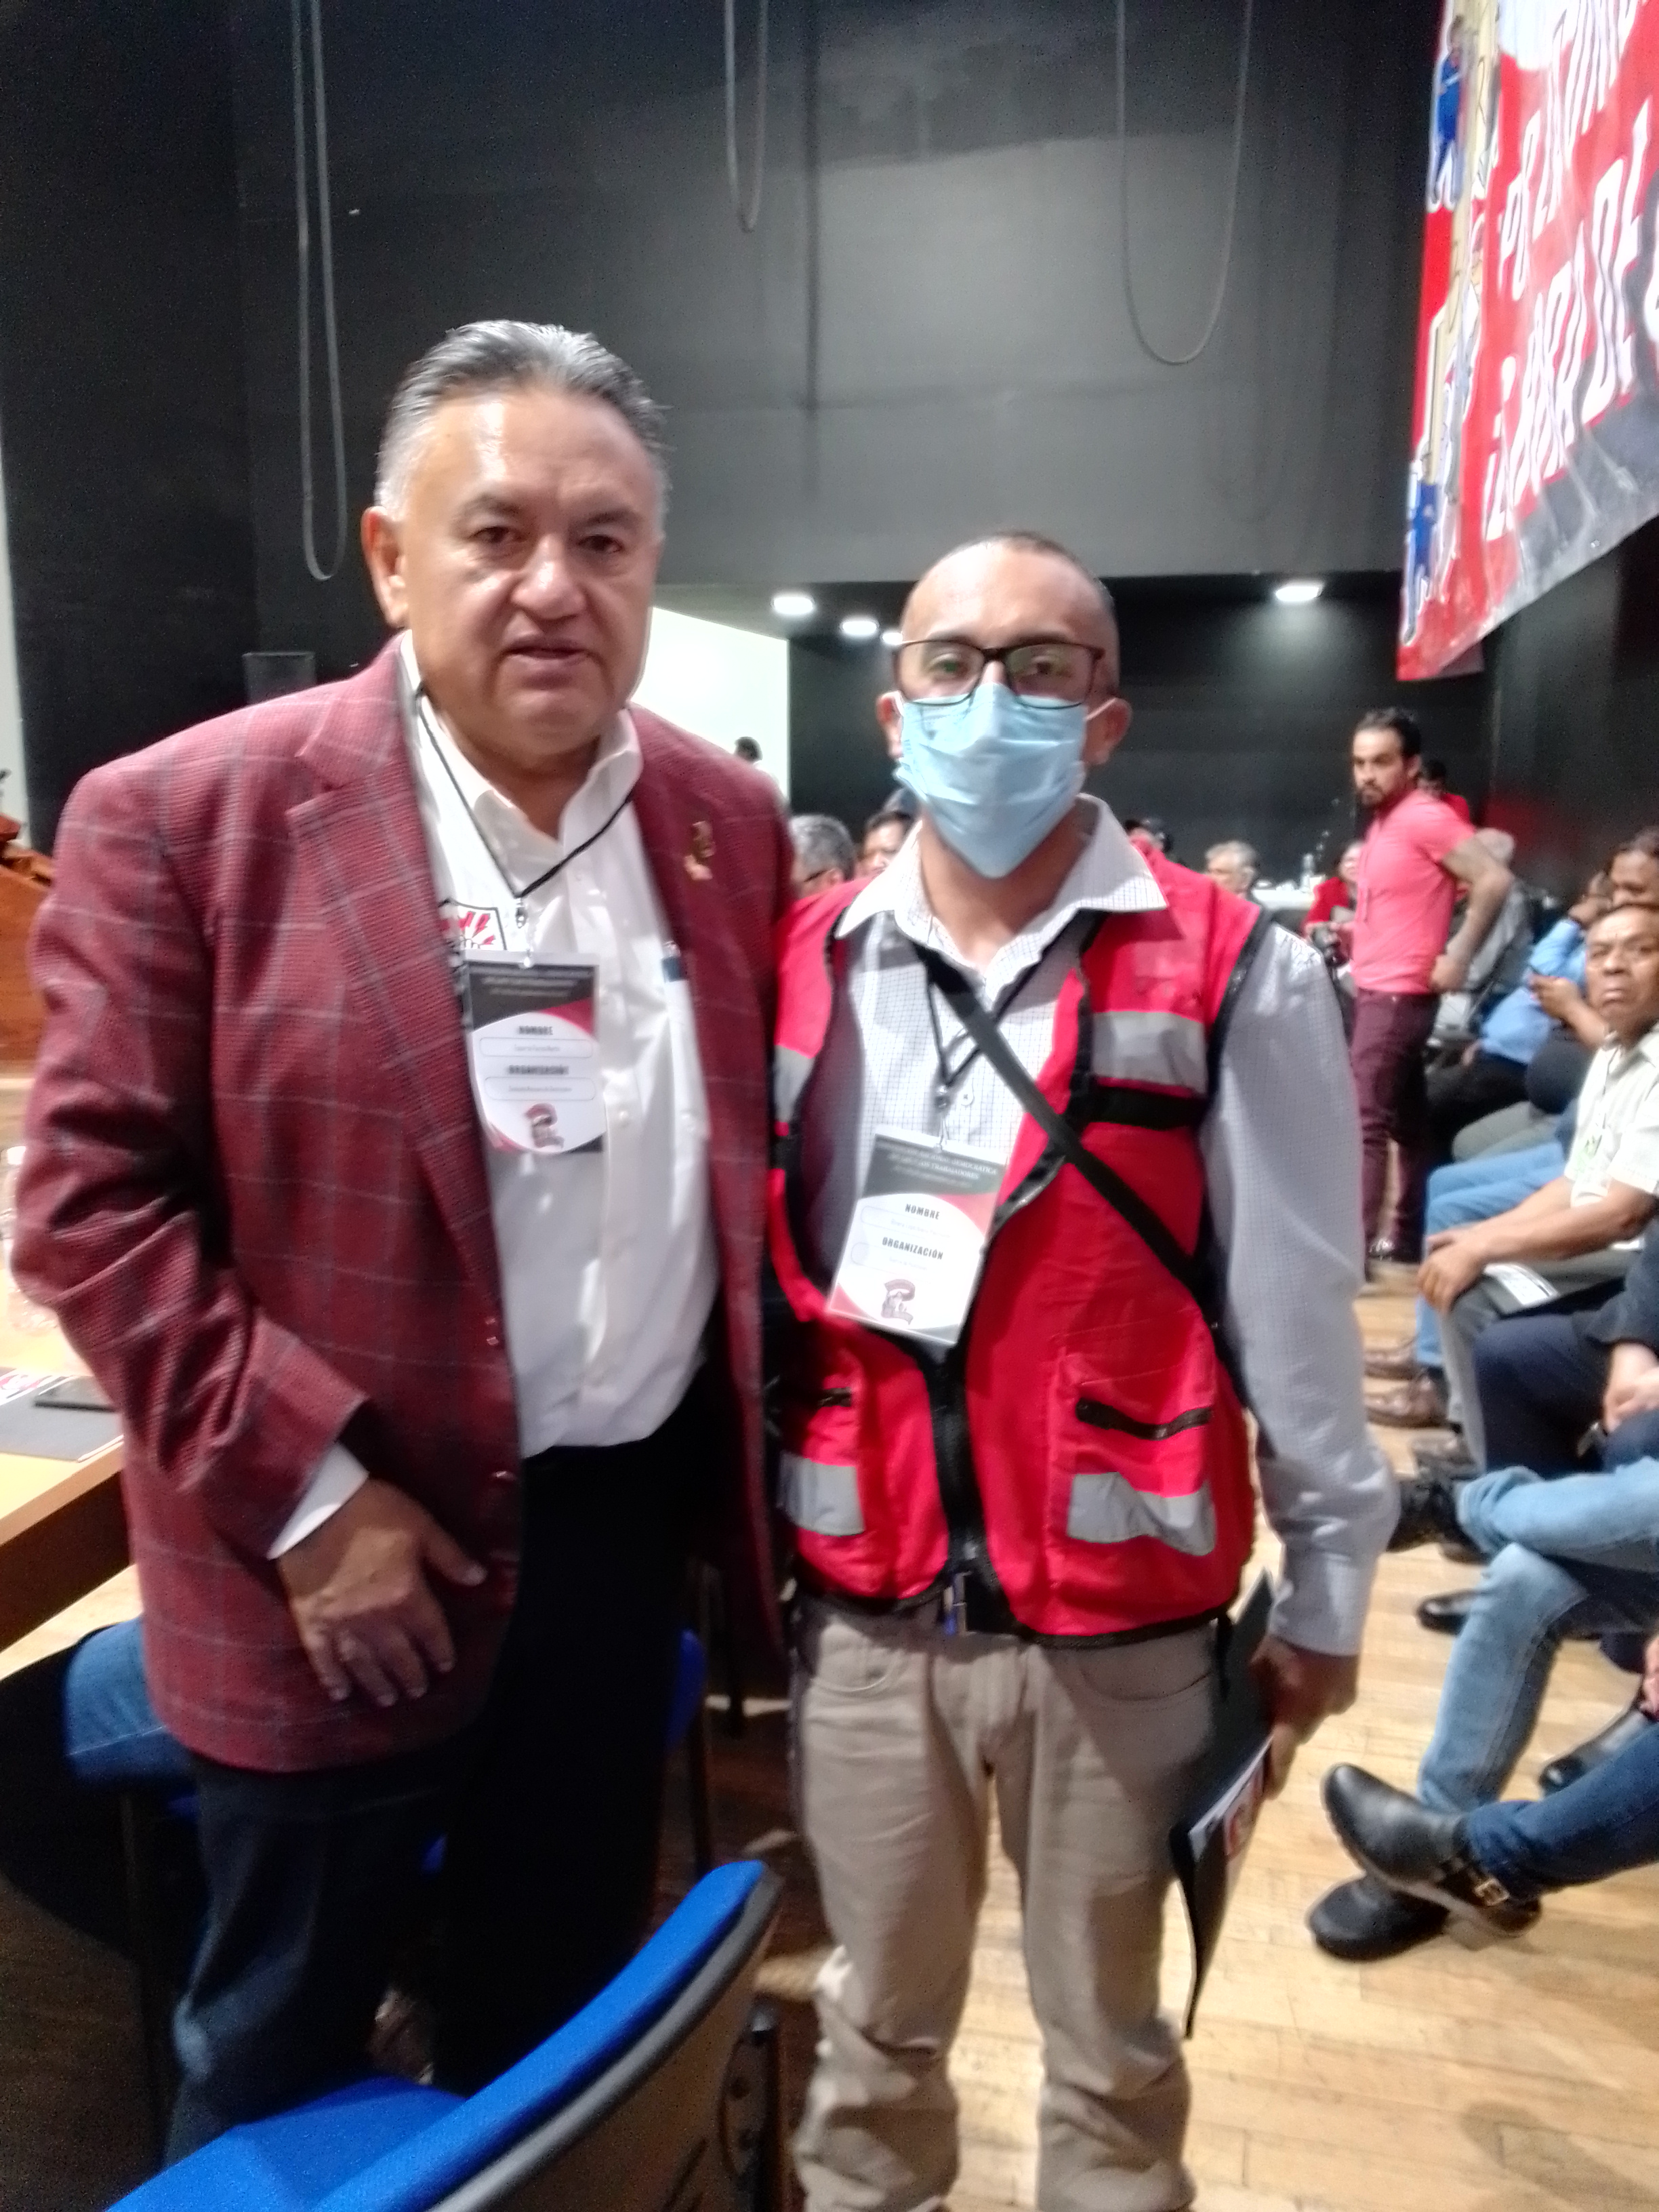 Para mí ya eres el padre de los trabajadores: Raymundo Lopeztiana en solidaridad con Martín Esparza 